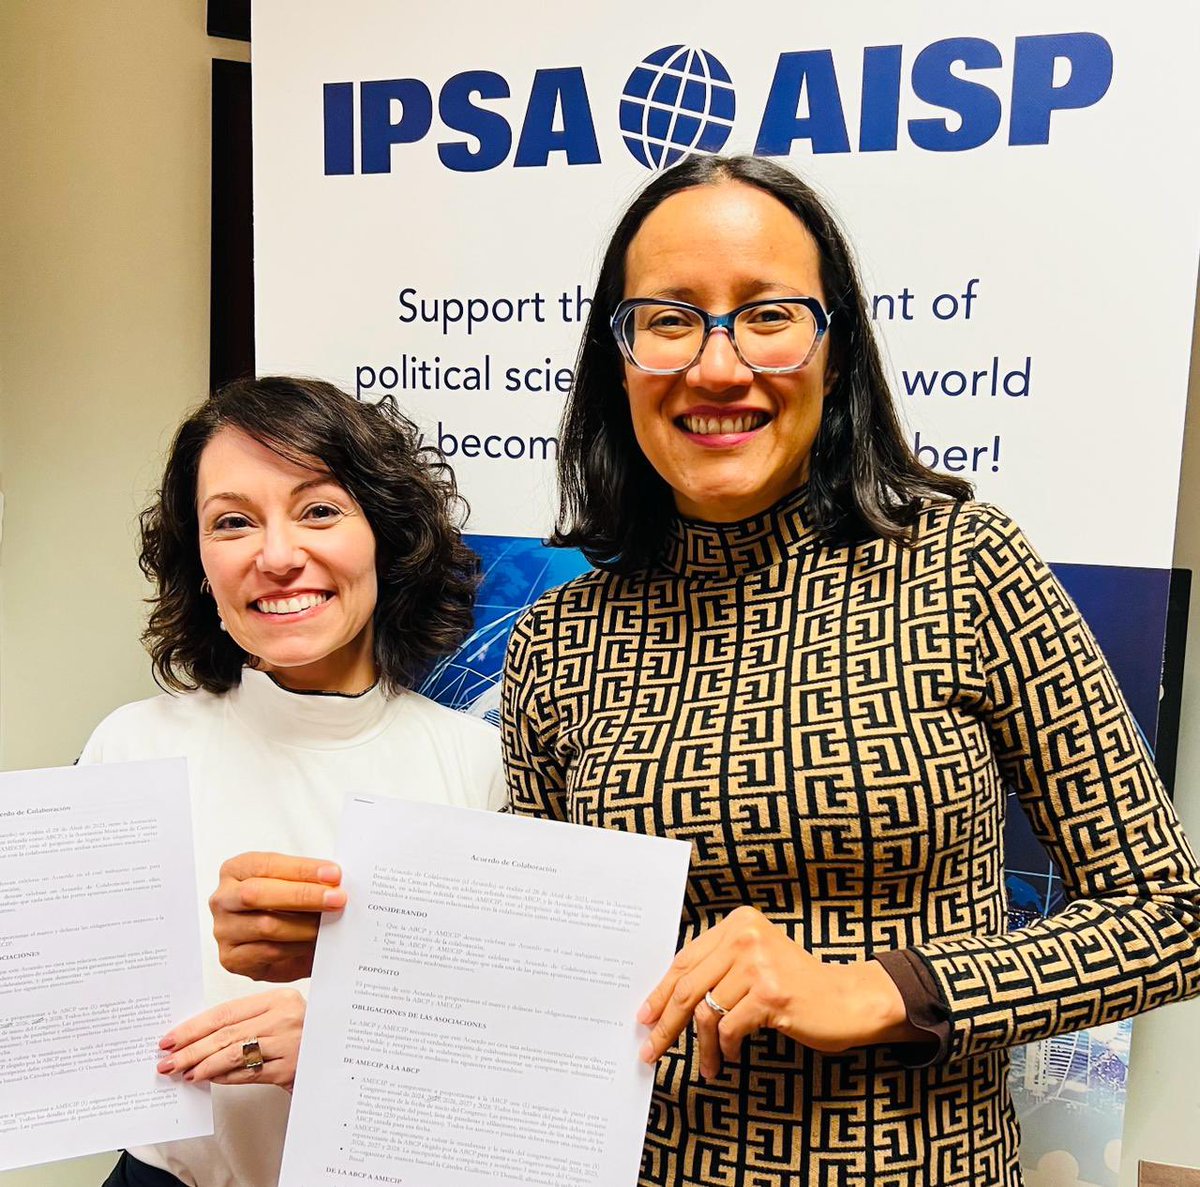 📃En el marco de la reunión del Comité Ejecutivo de la #IPSA, las presidentas de @AmecipOficial y de @ABCP_bot firmaron un acuerdo de colaboración para trabajar juntas proyectos que contribuyan al desarrollo inclusivo de la #CienciaPolítica #AMECIP